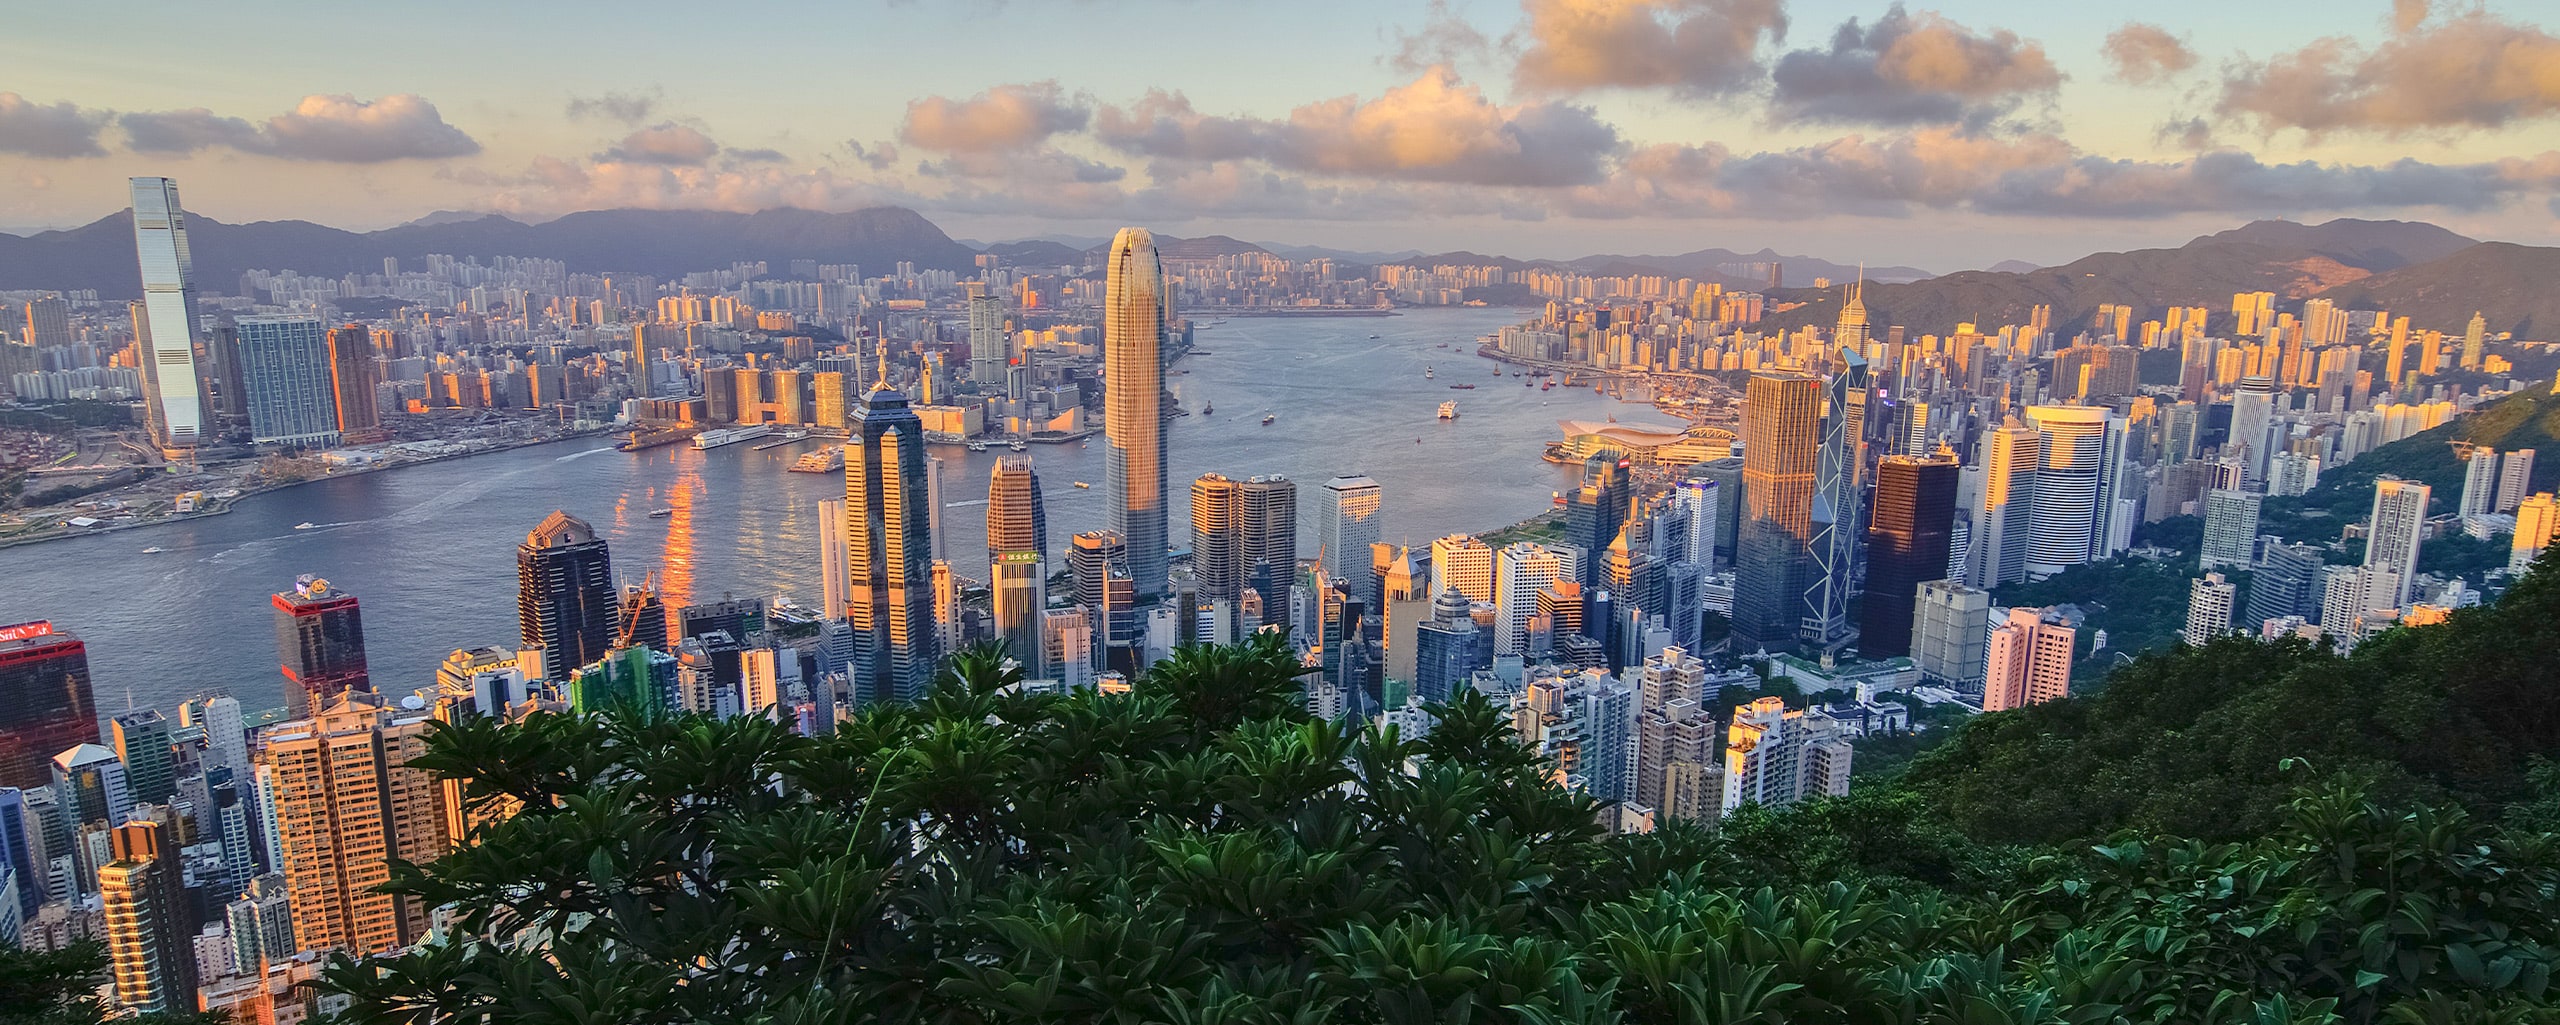 Hong Kong – The Hong Kong General Chamber of Commerce